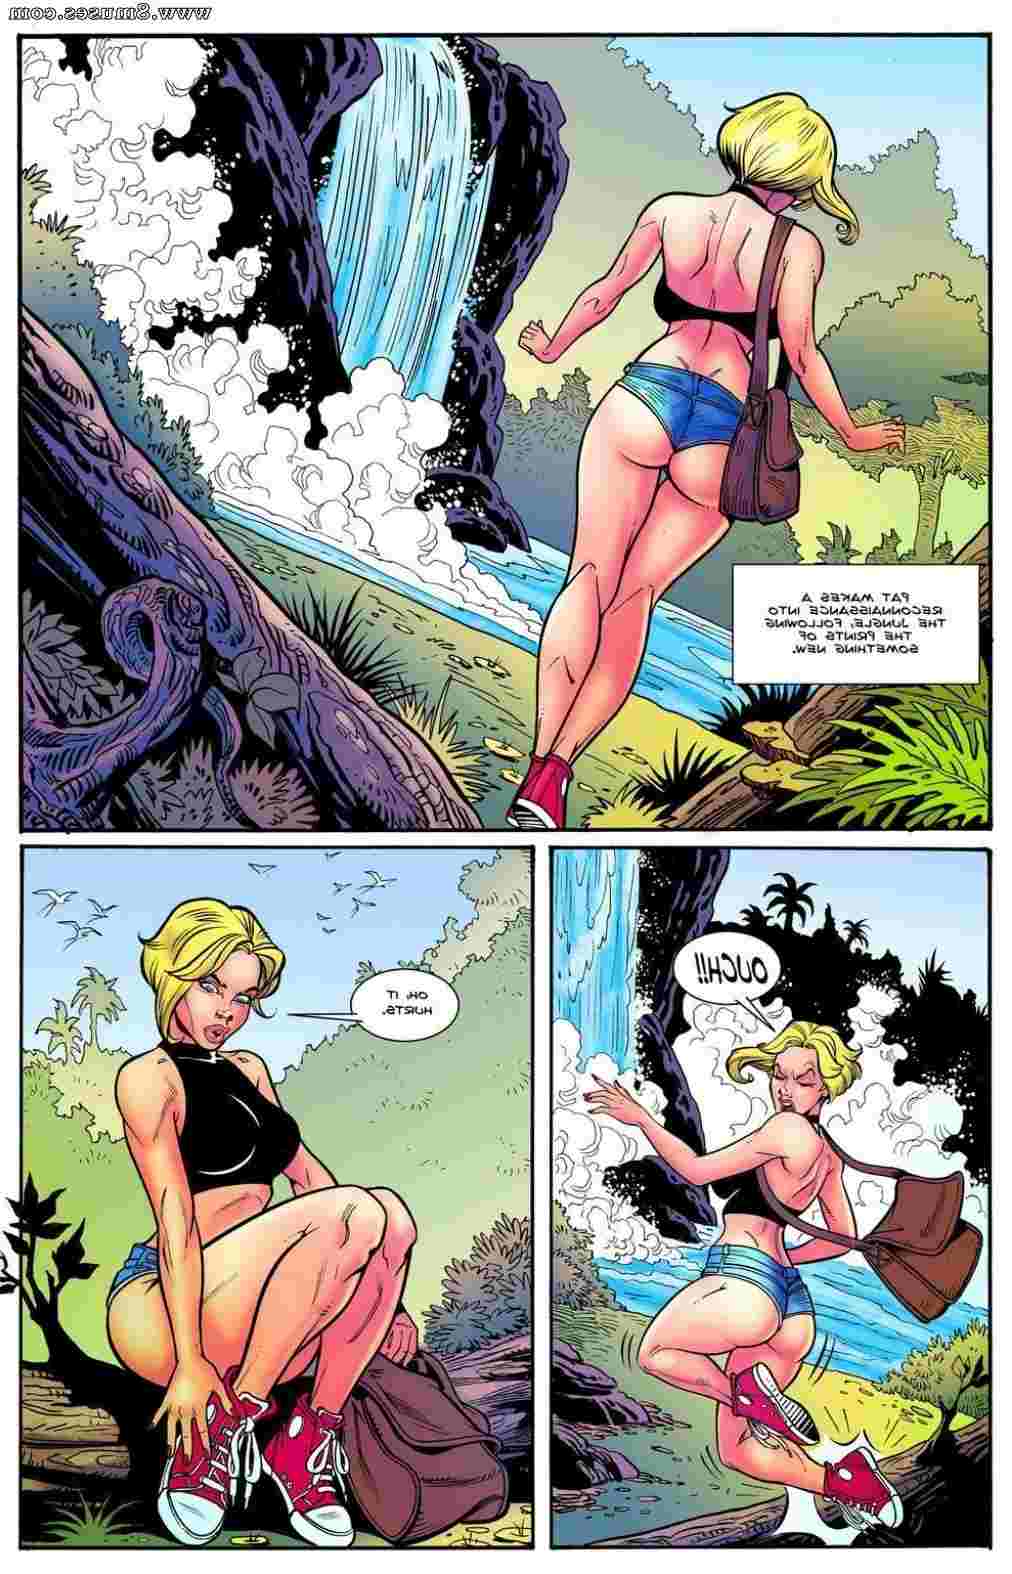 BE-Story-Club-Comics/Danger-Breast Danger_Breast__8muses_-_Sex_and_Porn_Comics_2.jpg